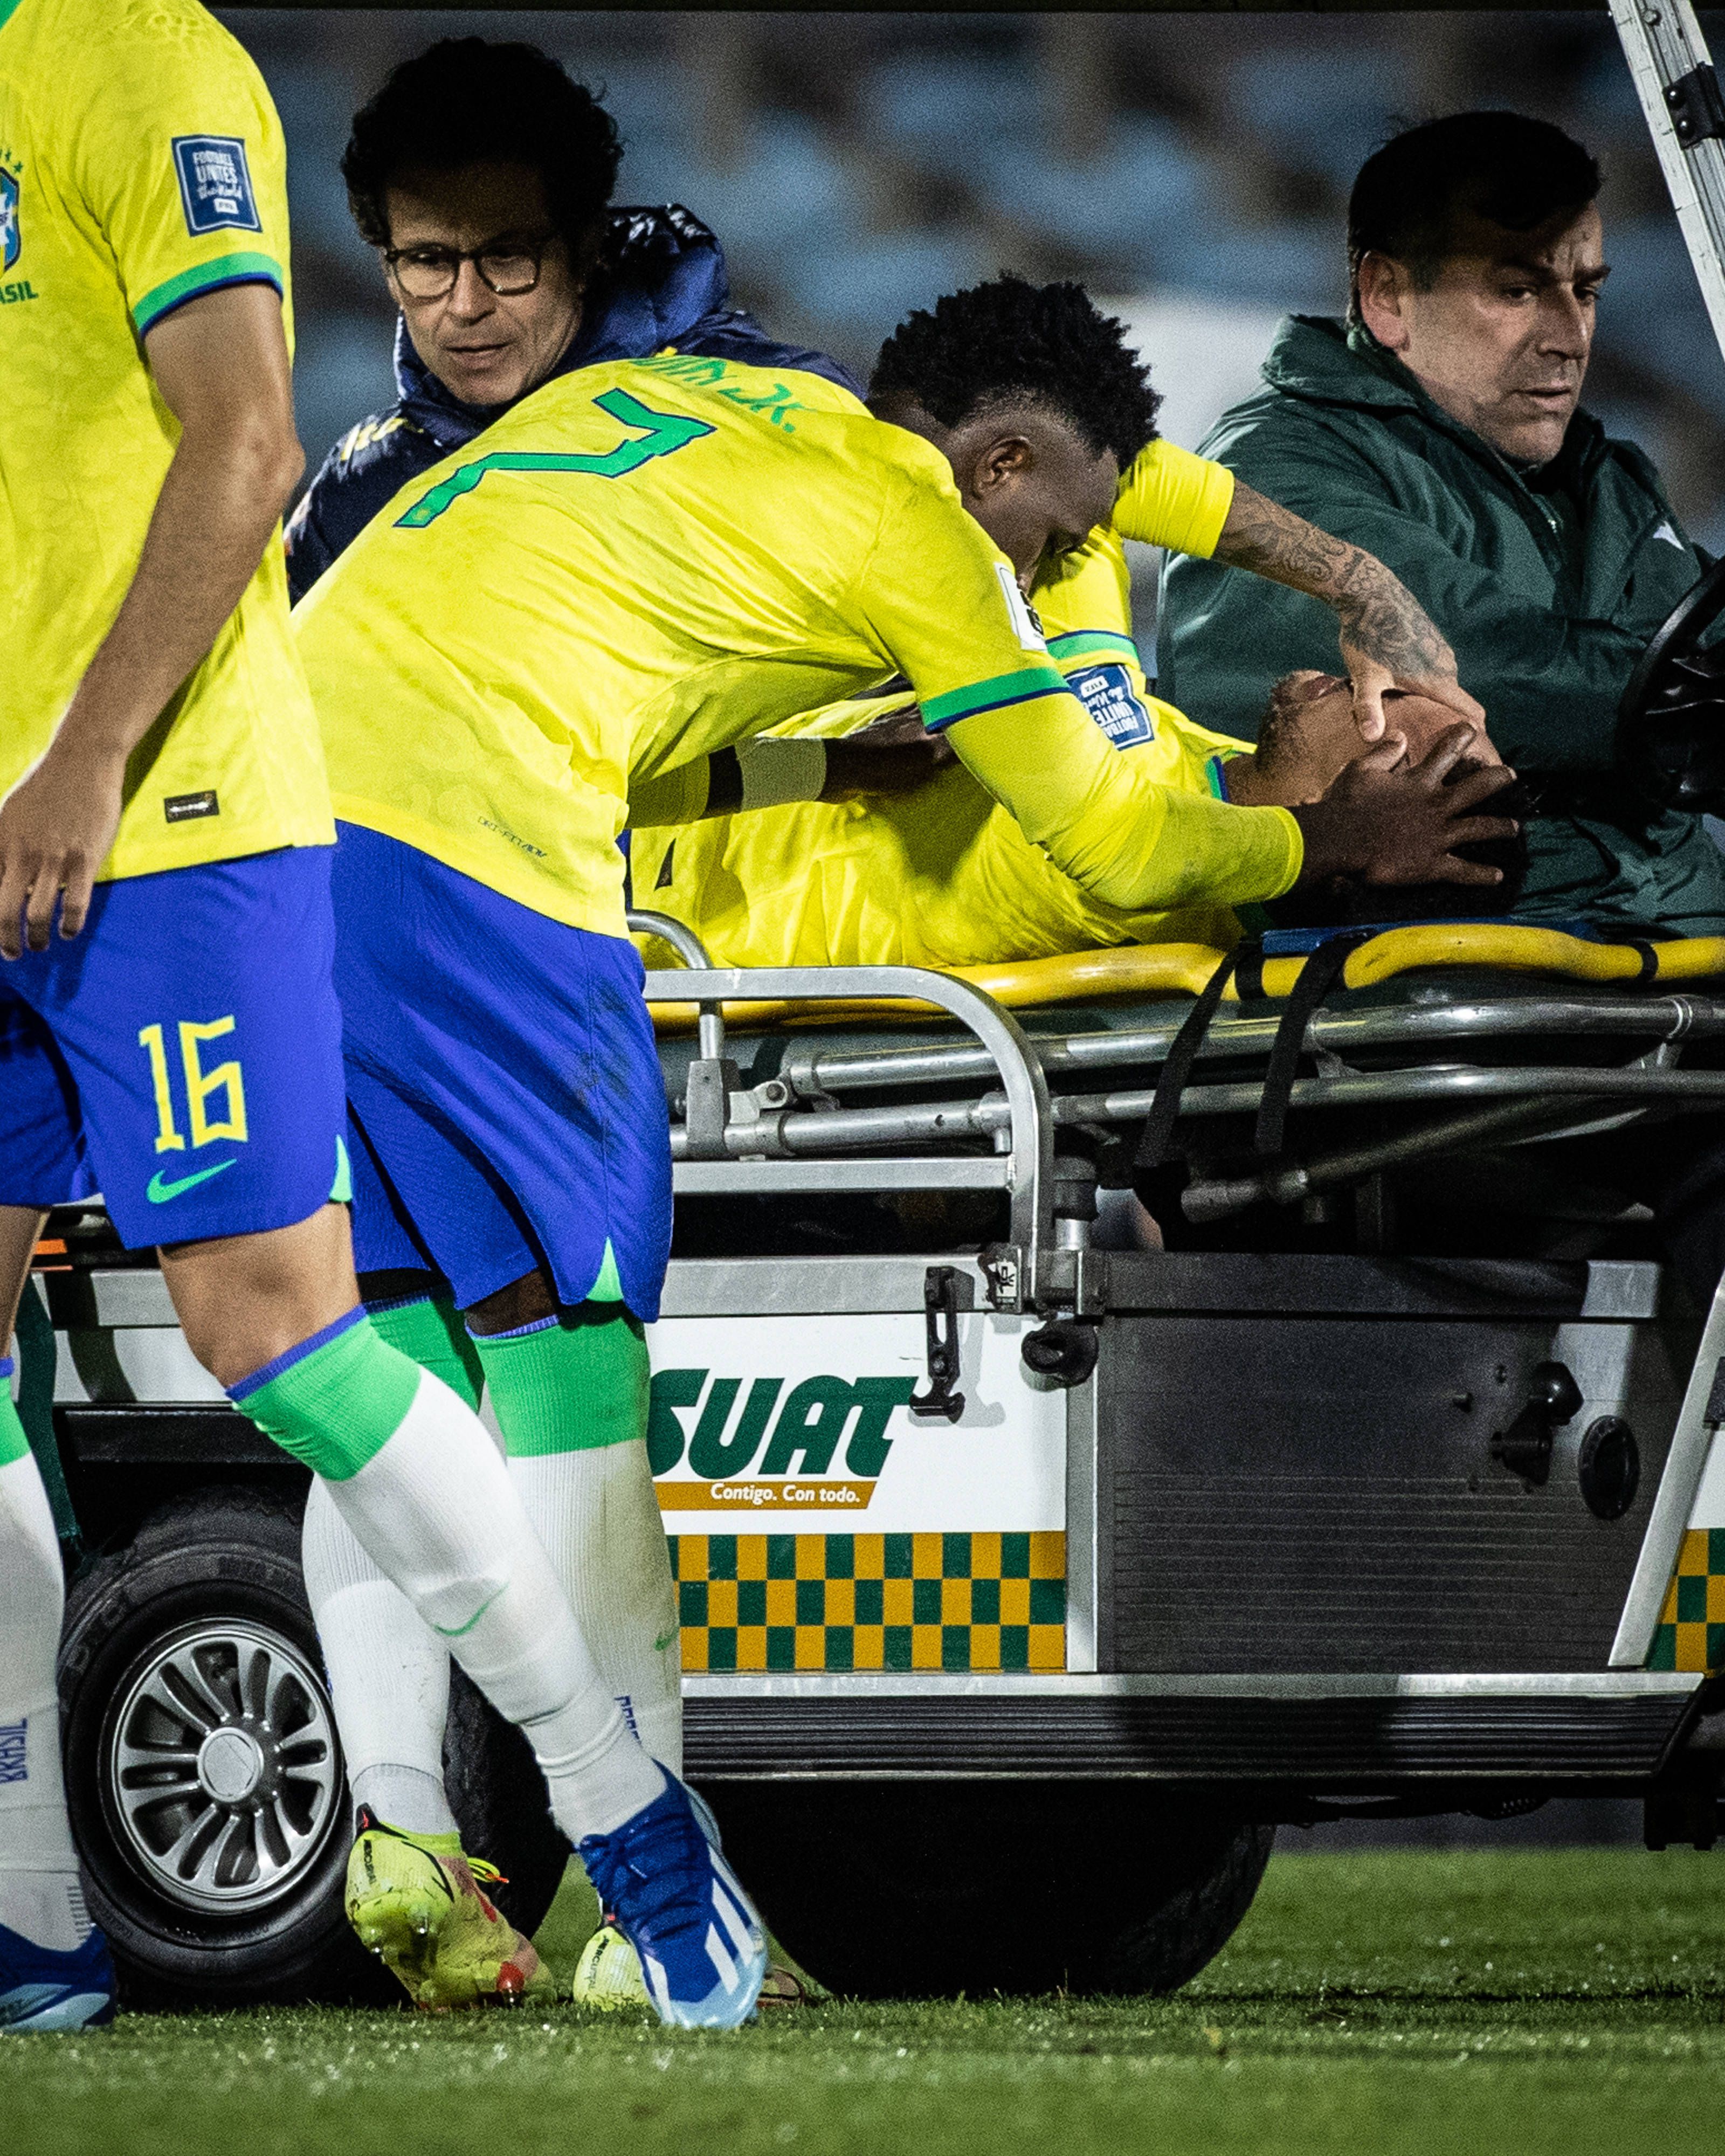 Time árabe decide suspender contrato de Neymar durante lesão. Entenda!